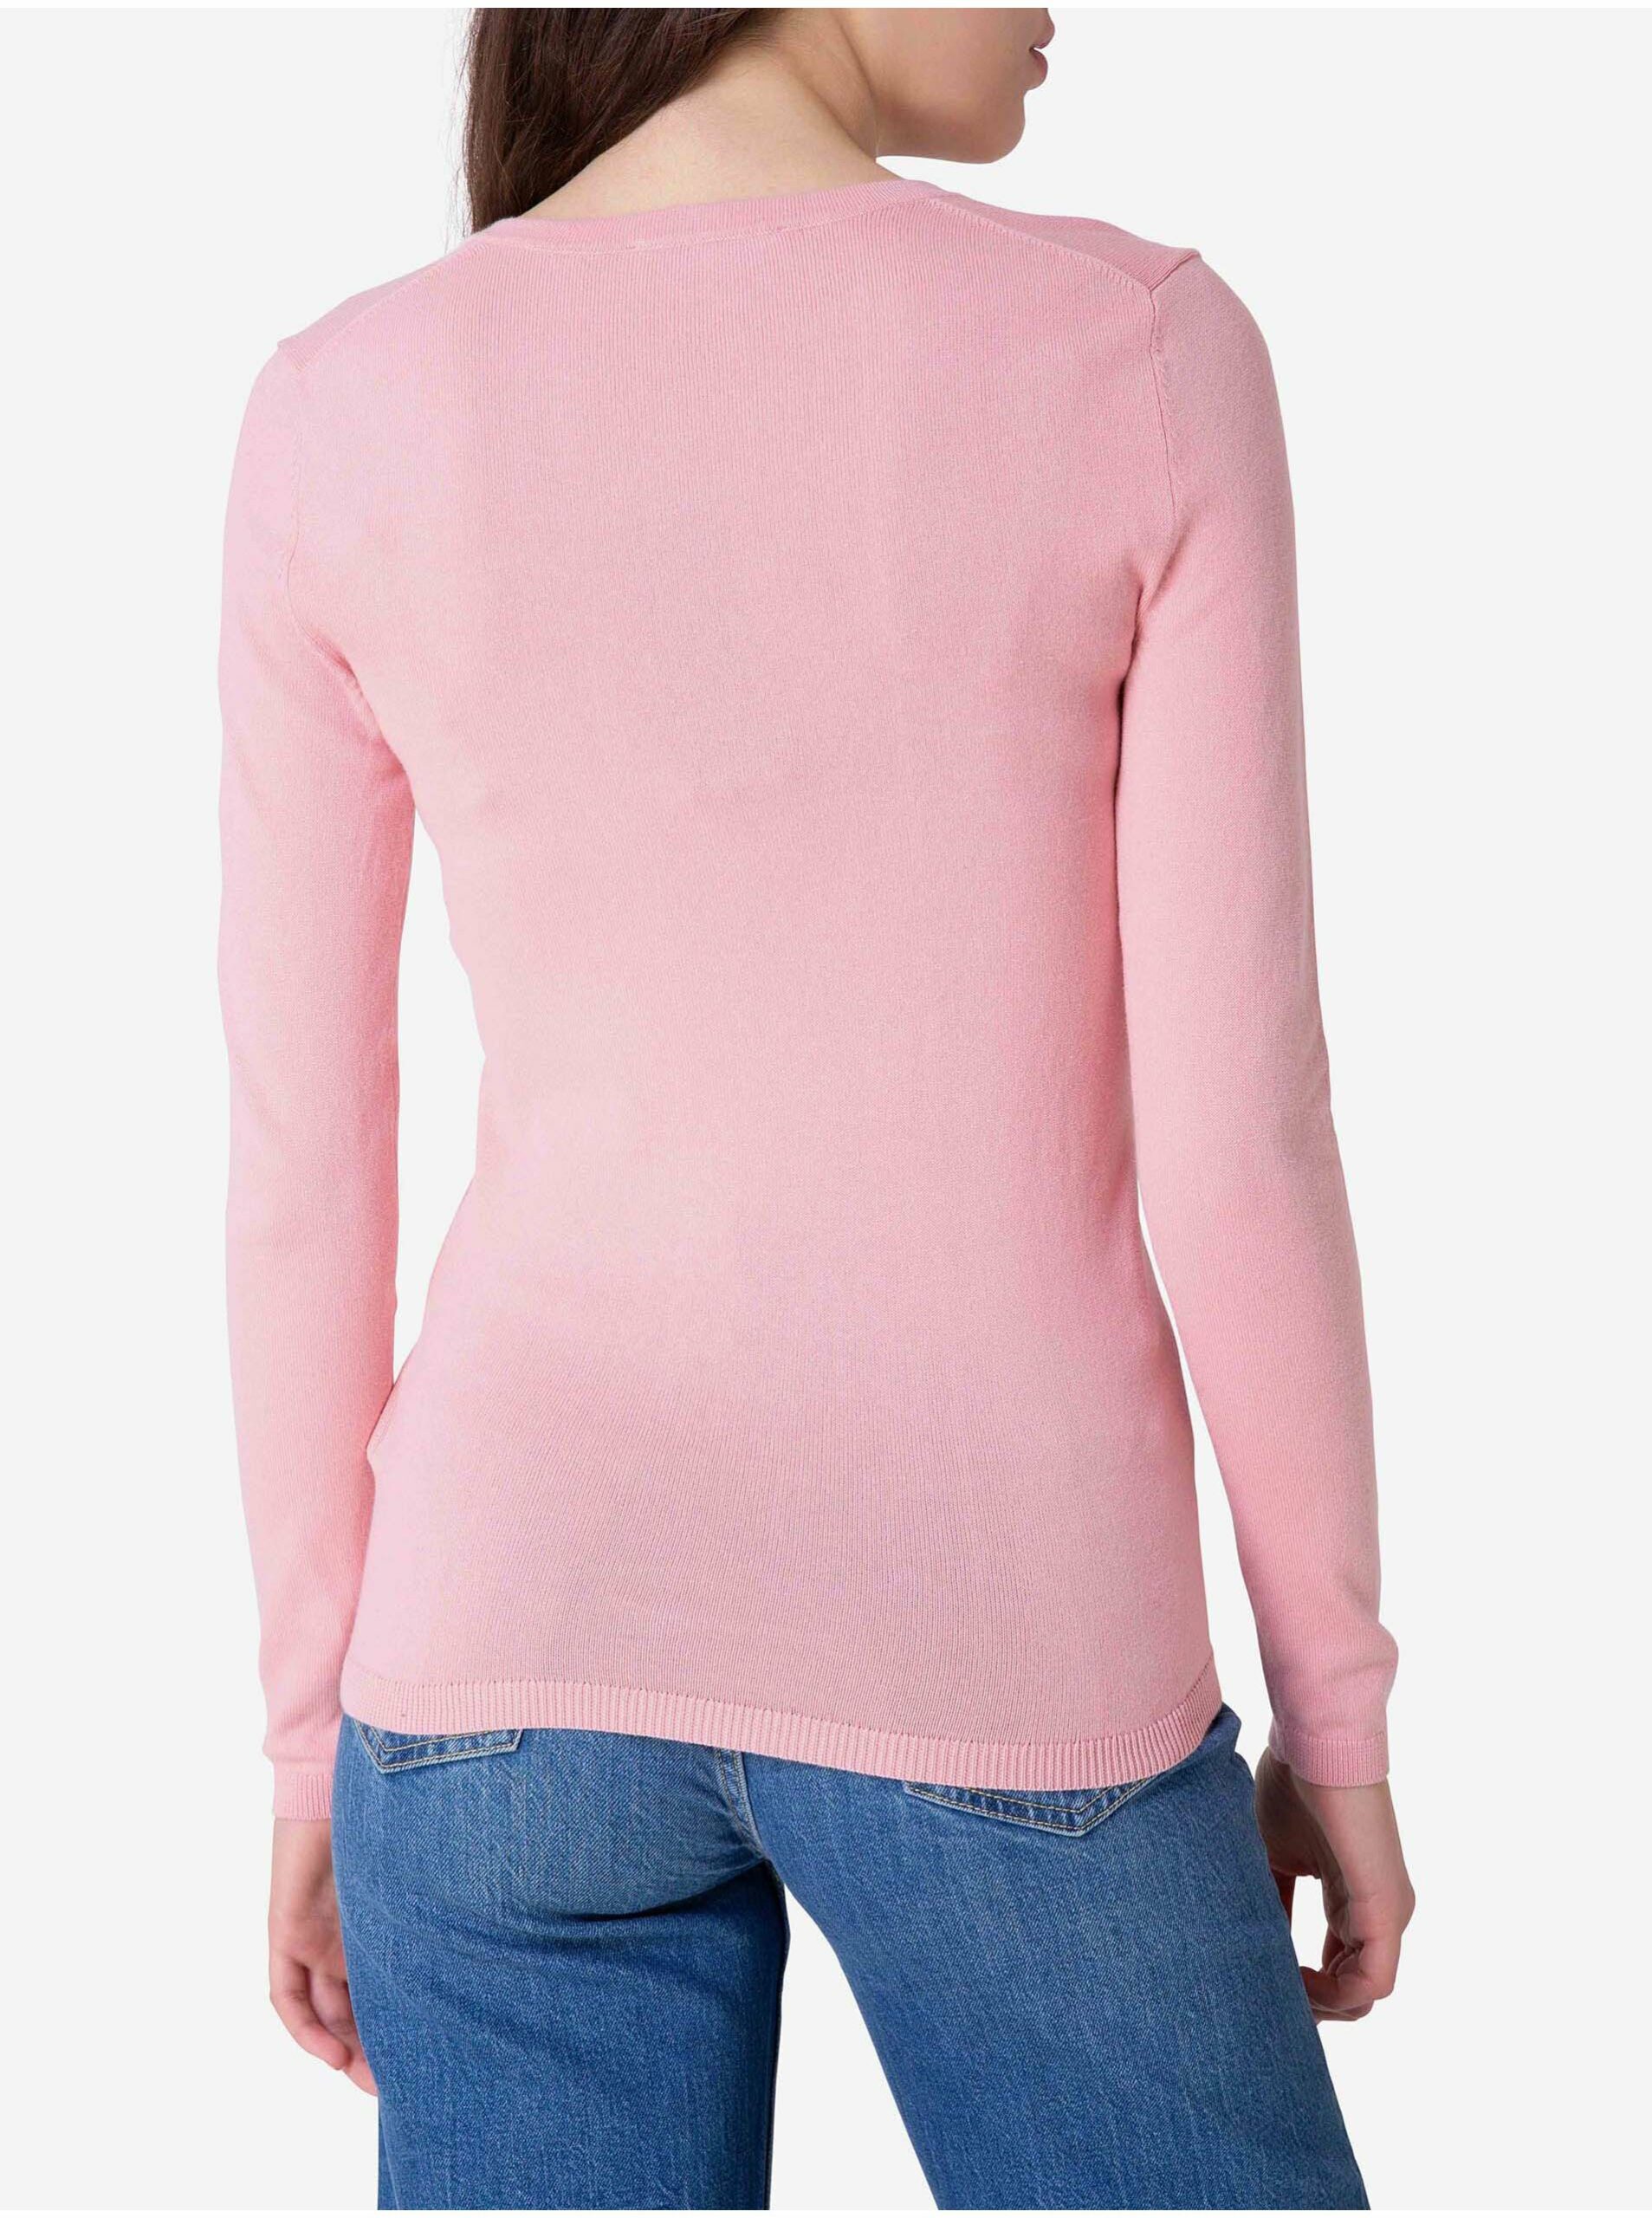 Ružový dámsky ľahký sveter Tommy Hilfiger